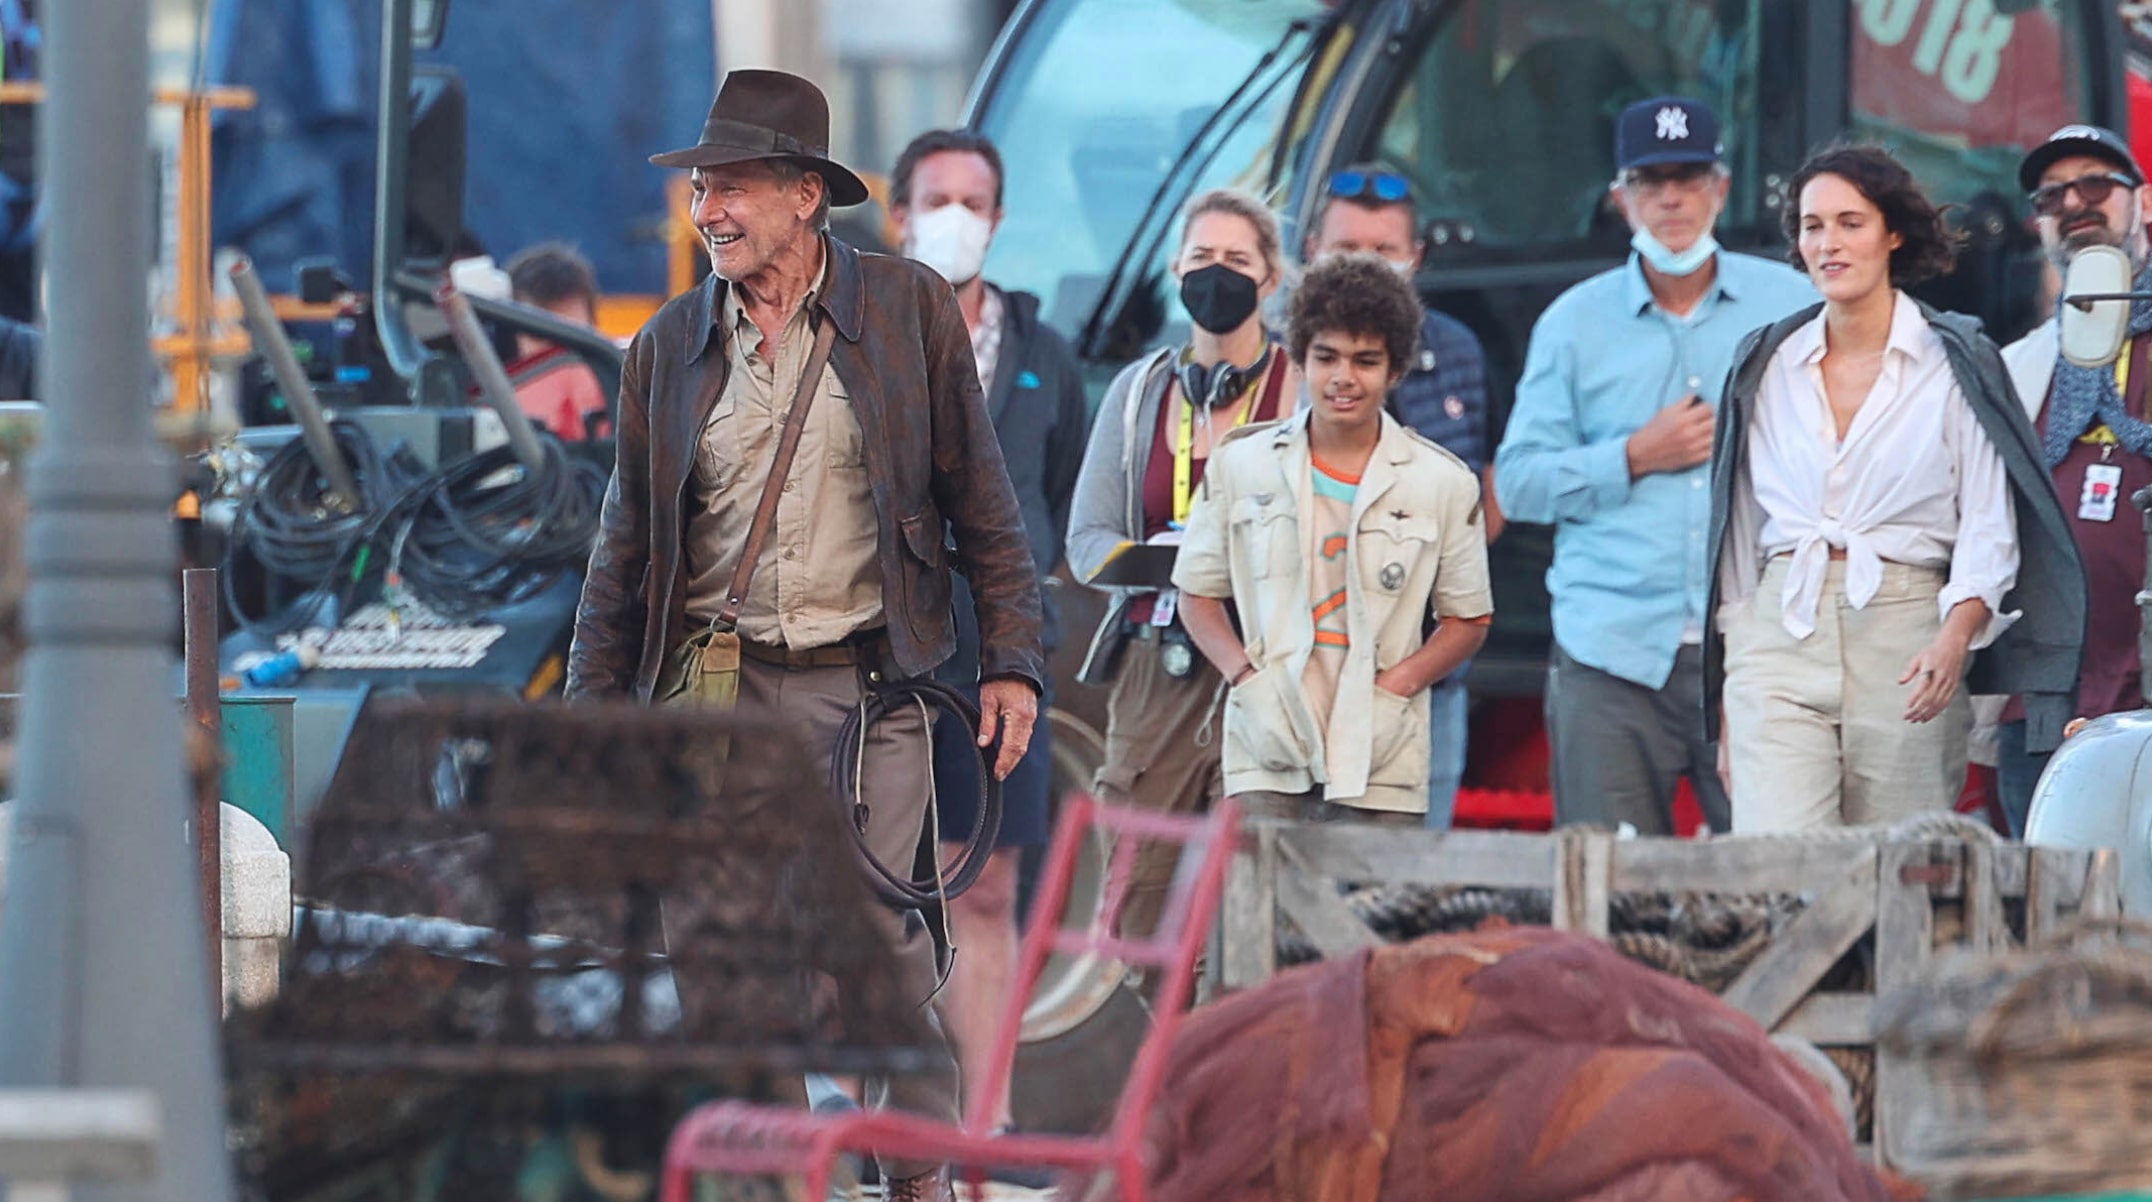 How long is Indiana Jones 5?